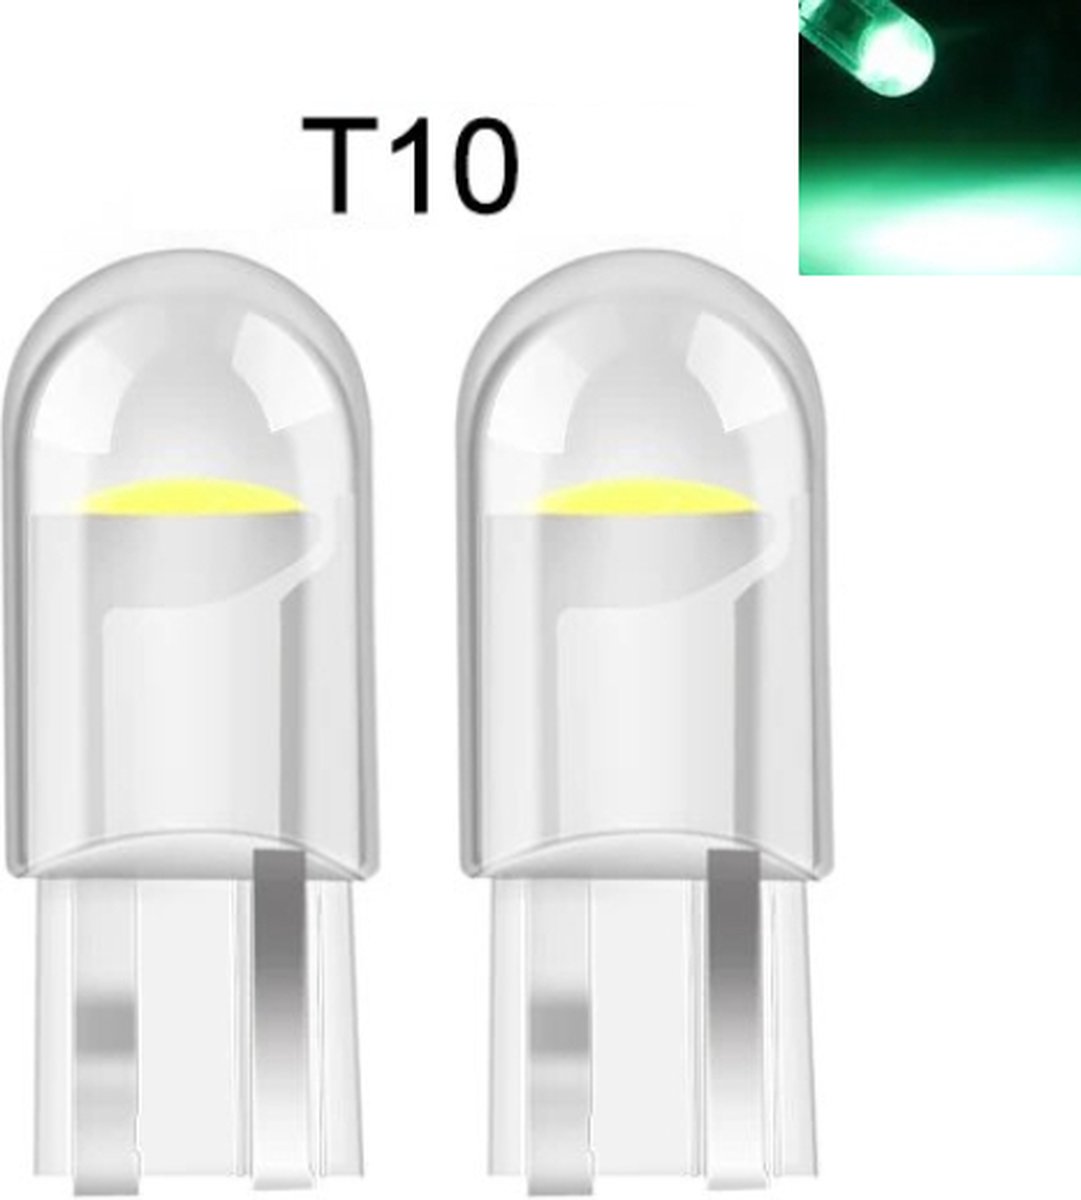 TLVX T10 W5W LED Auto lampen Groen – Canbus – Steeklamp – Interieur verlichting – Groene kleur – Lange levensduur –12V – Stadslicht – Interieurlicht – Parkeer lampen – Stadsverlichting LED (2 stuks)